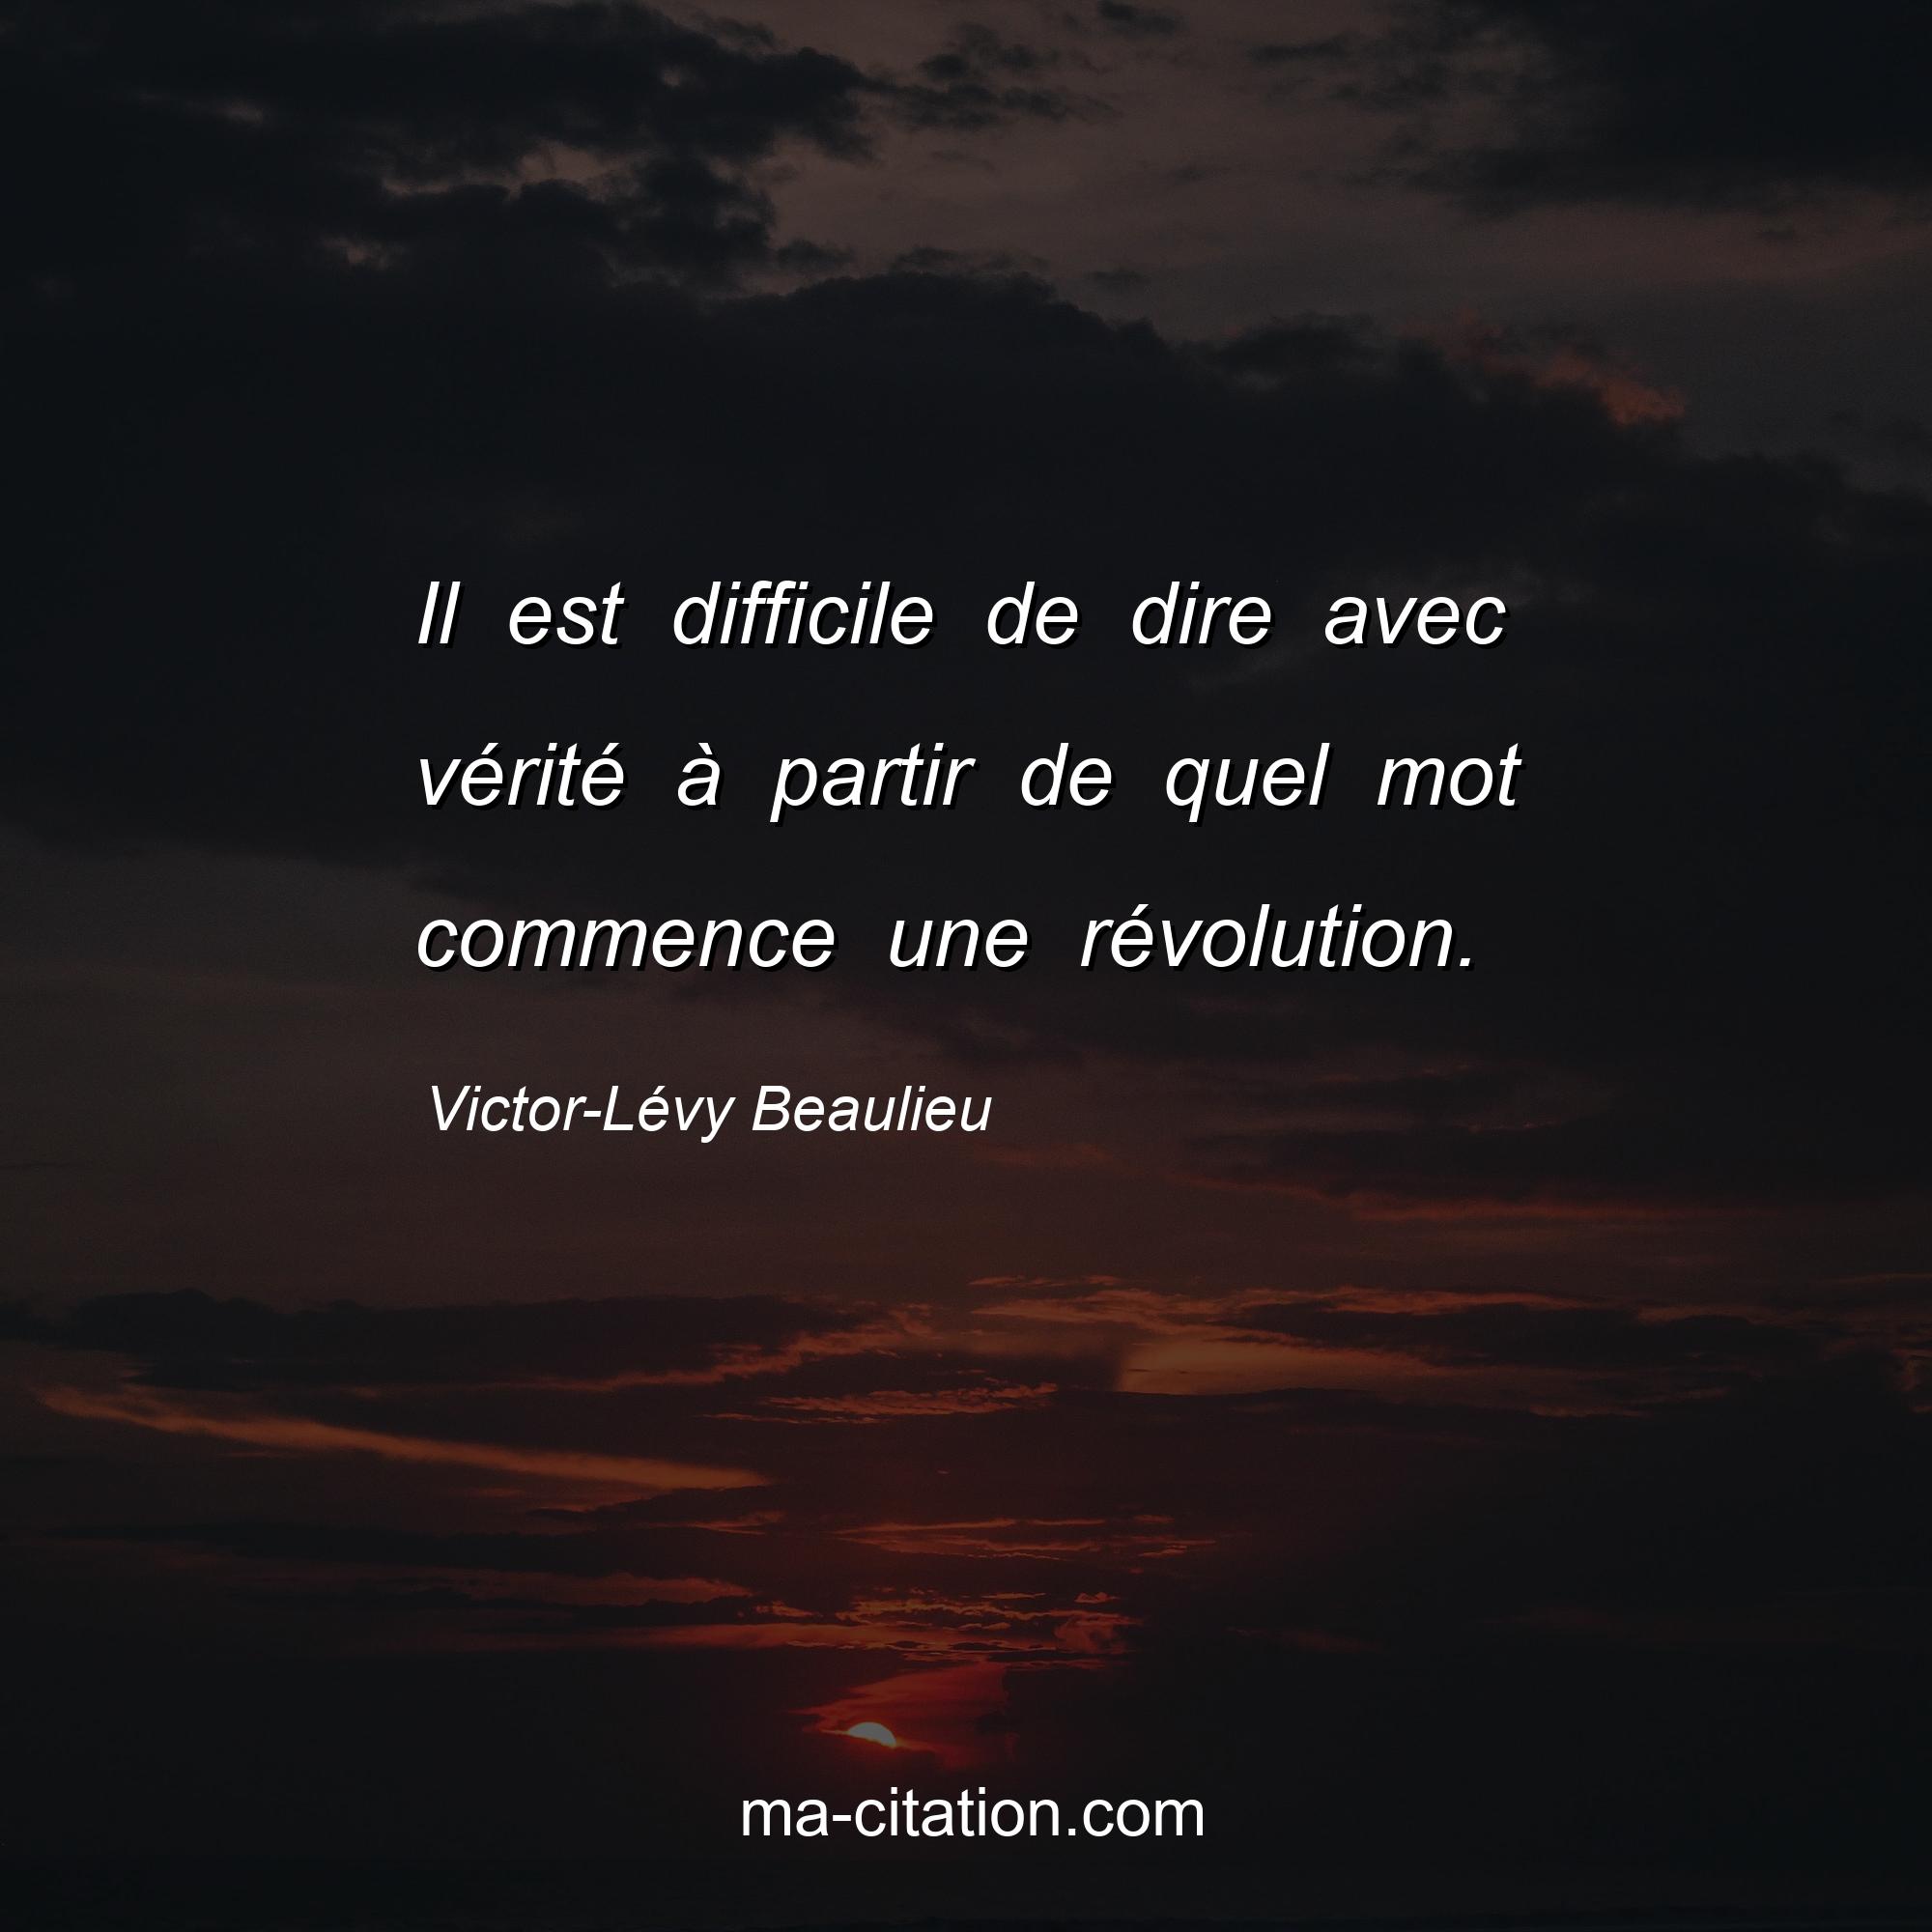 Victor-Lévy Beaulieu : Il est difficile de dire avec vérité à partir de quel mot commence une révolution.